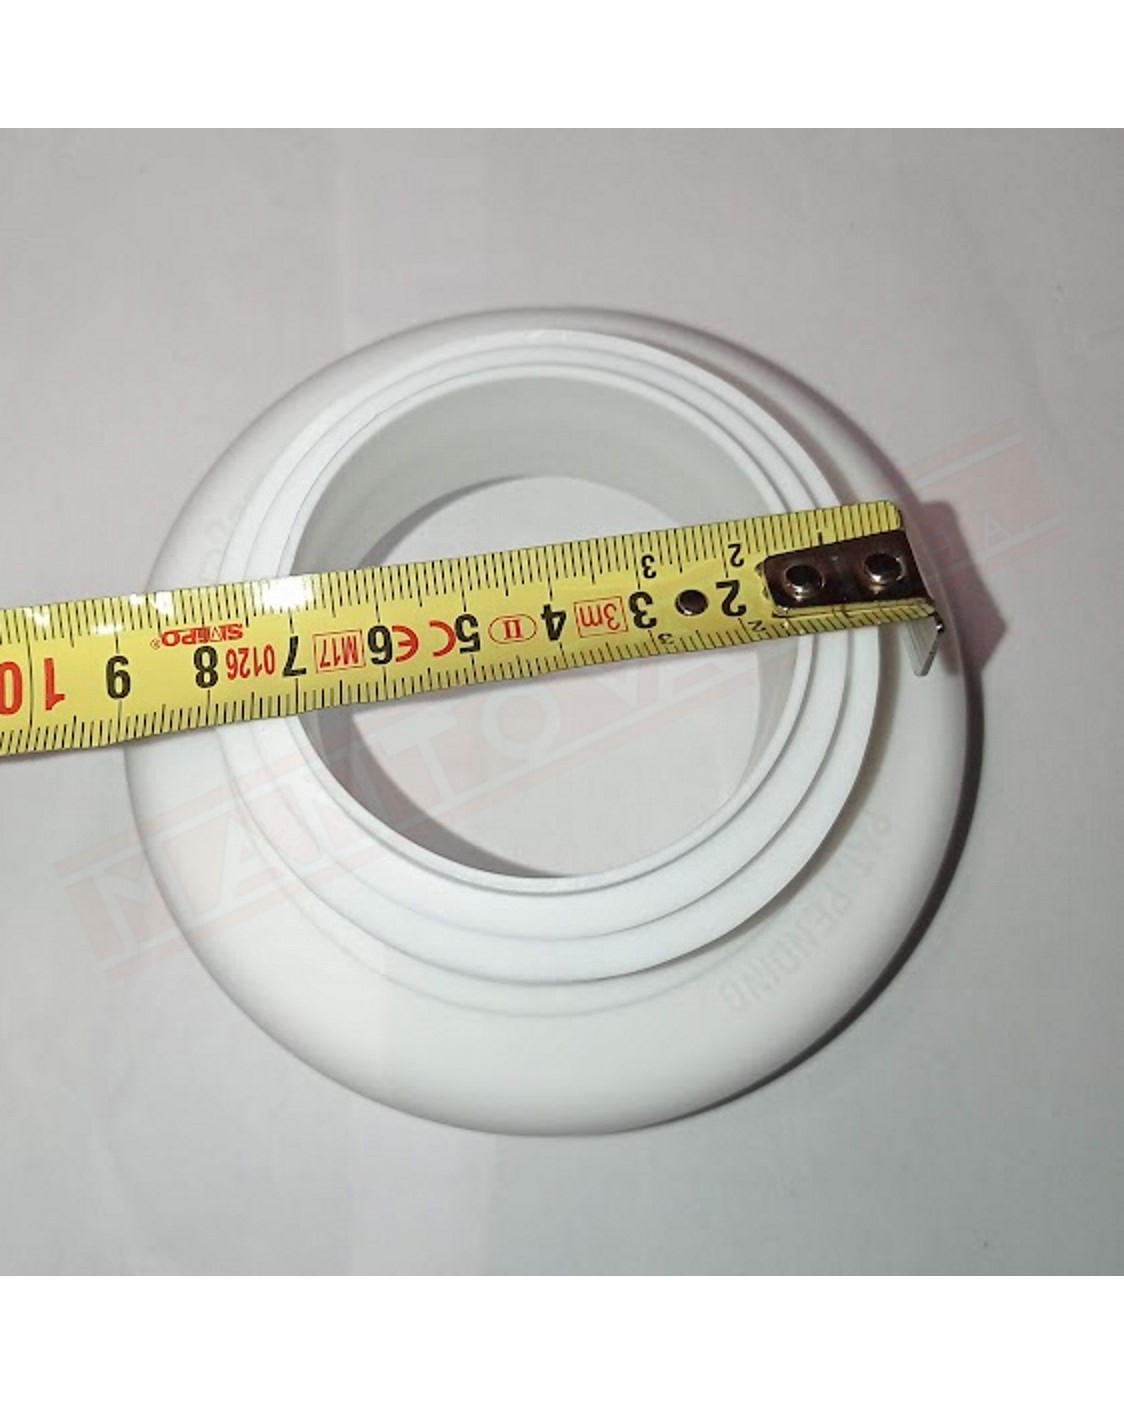 raccordo connessione per wc per braga diametro 8 cm